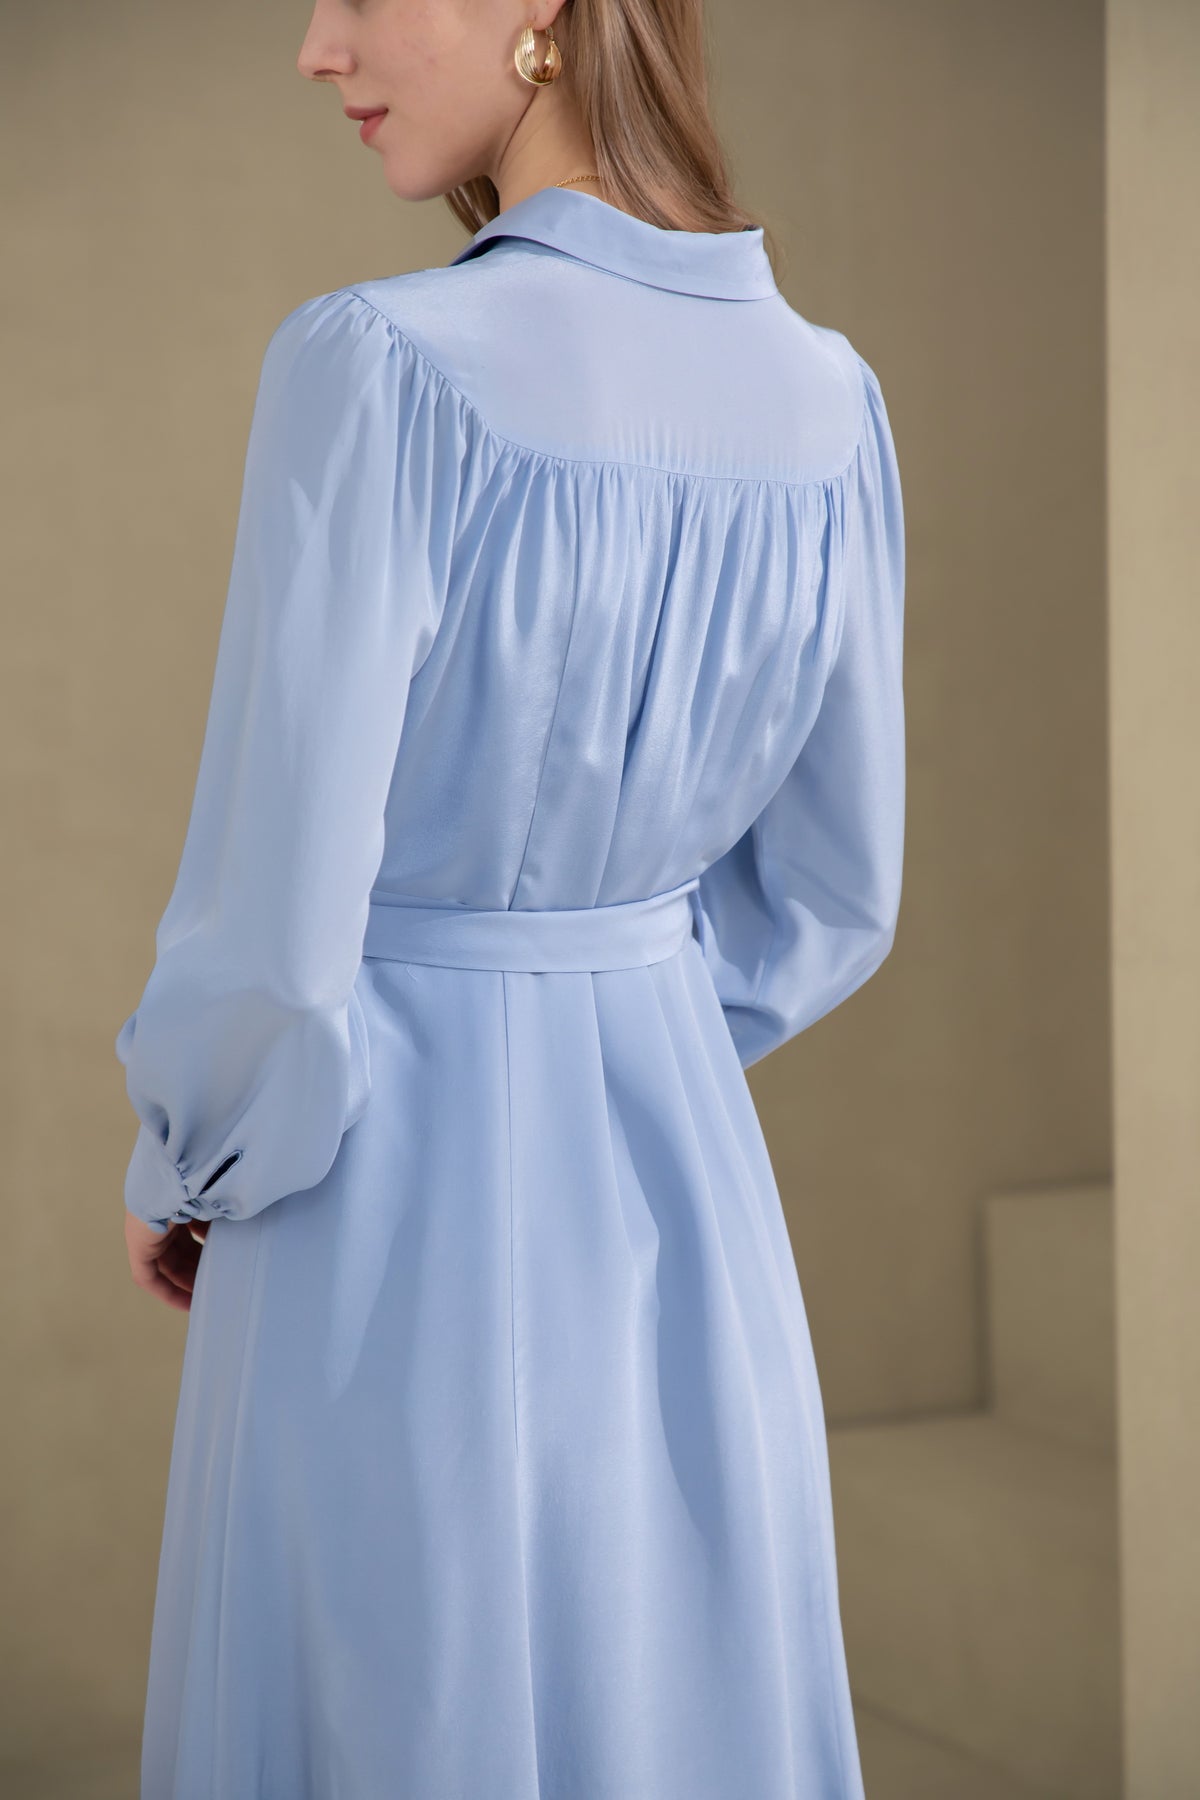 Peony silk long dress - parisian blue